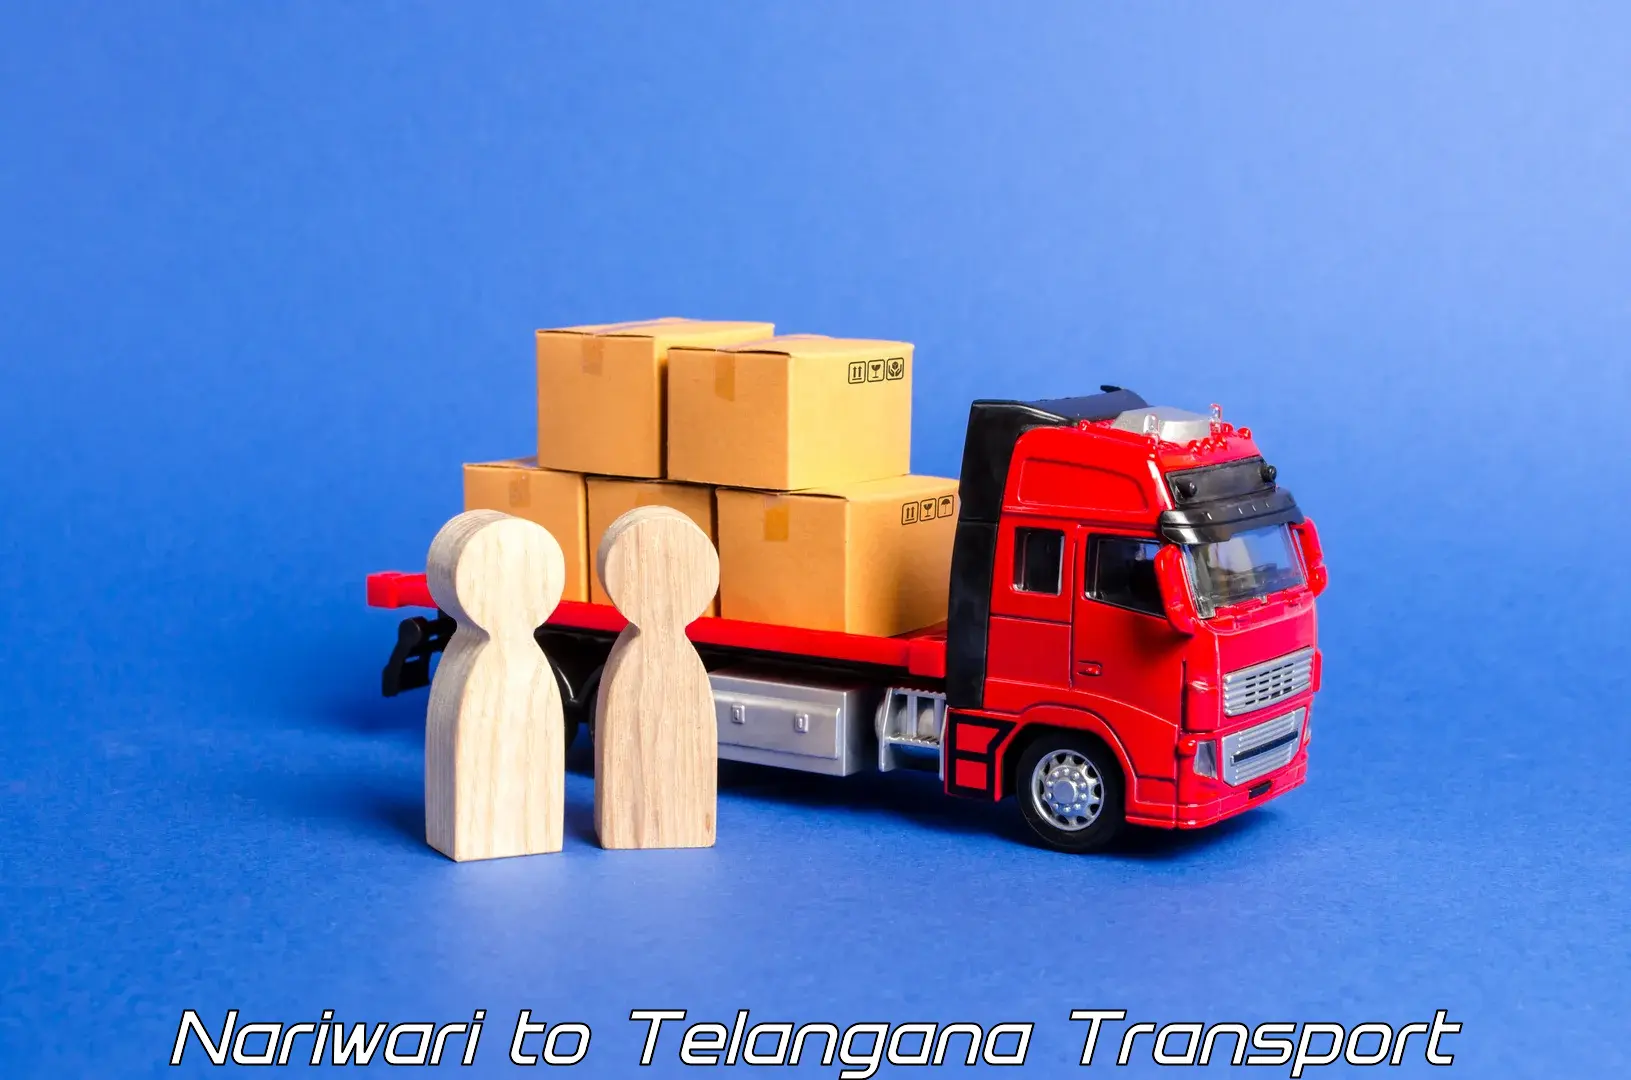 Lorry transport service Nariwari to Tallada